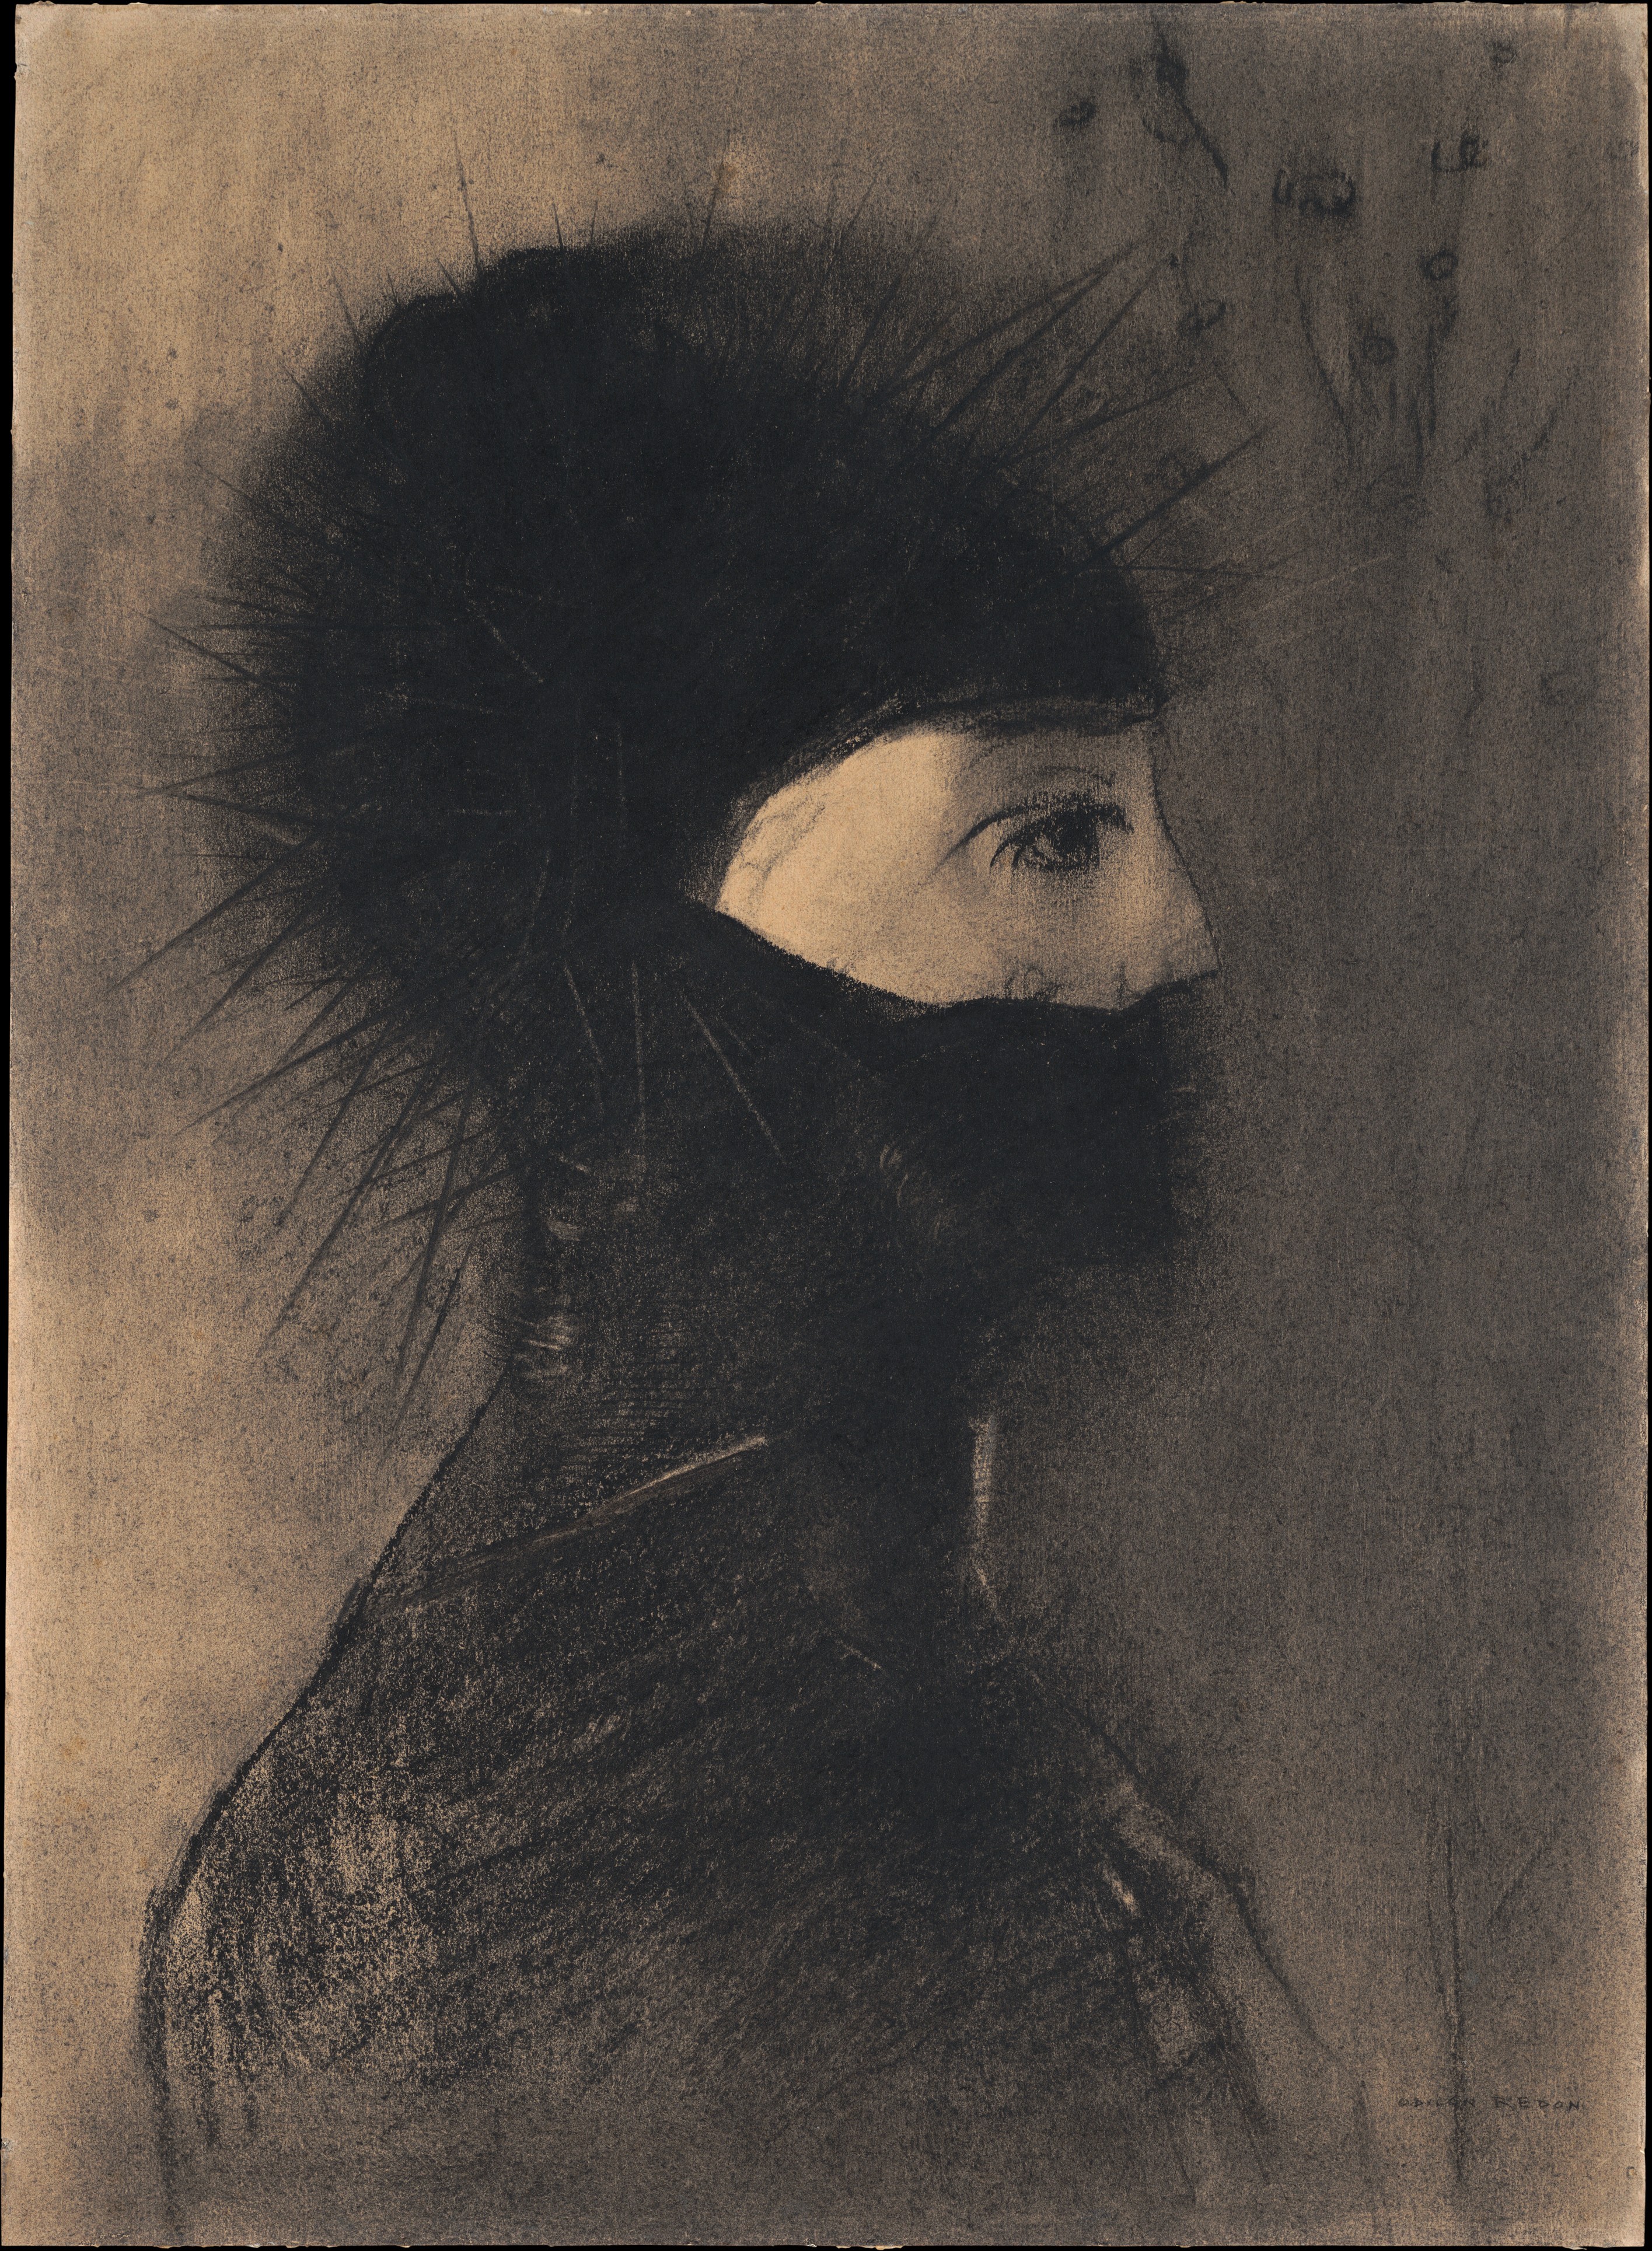 Zırh by Odilon Redon - 1891 